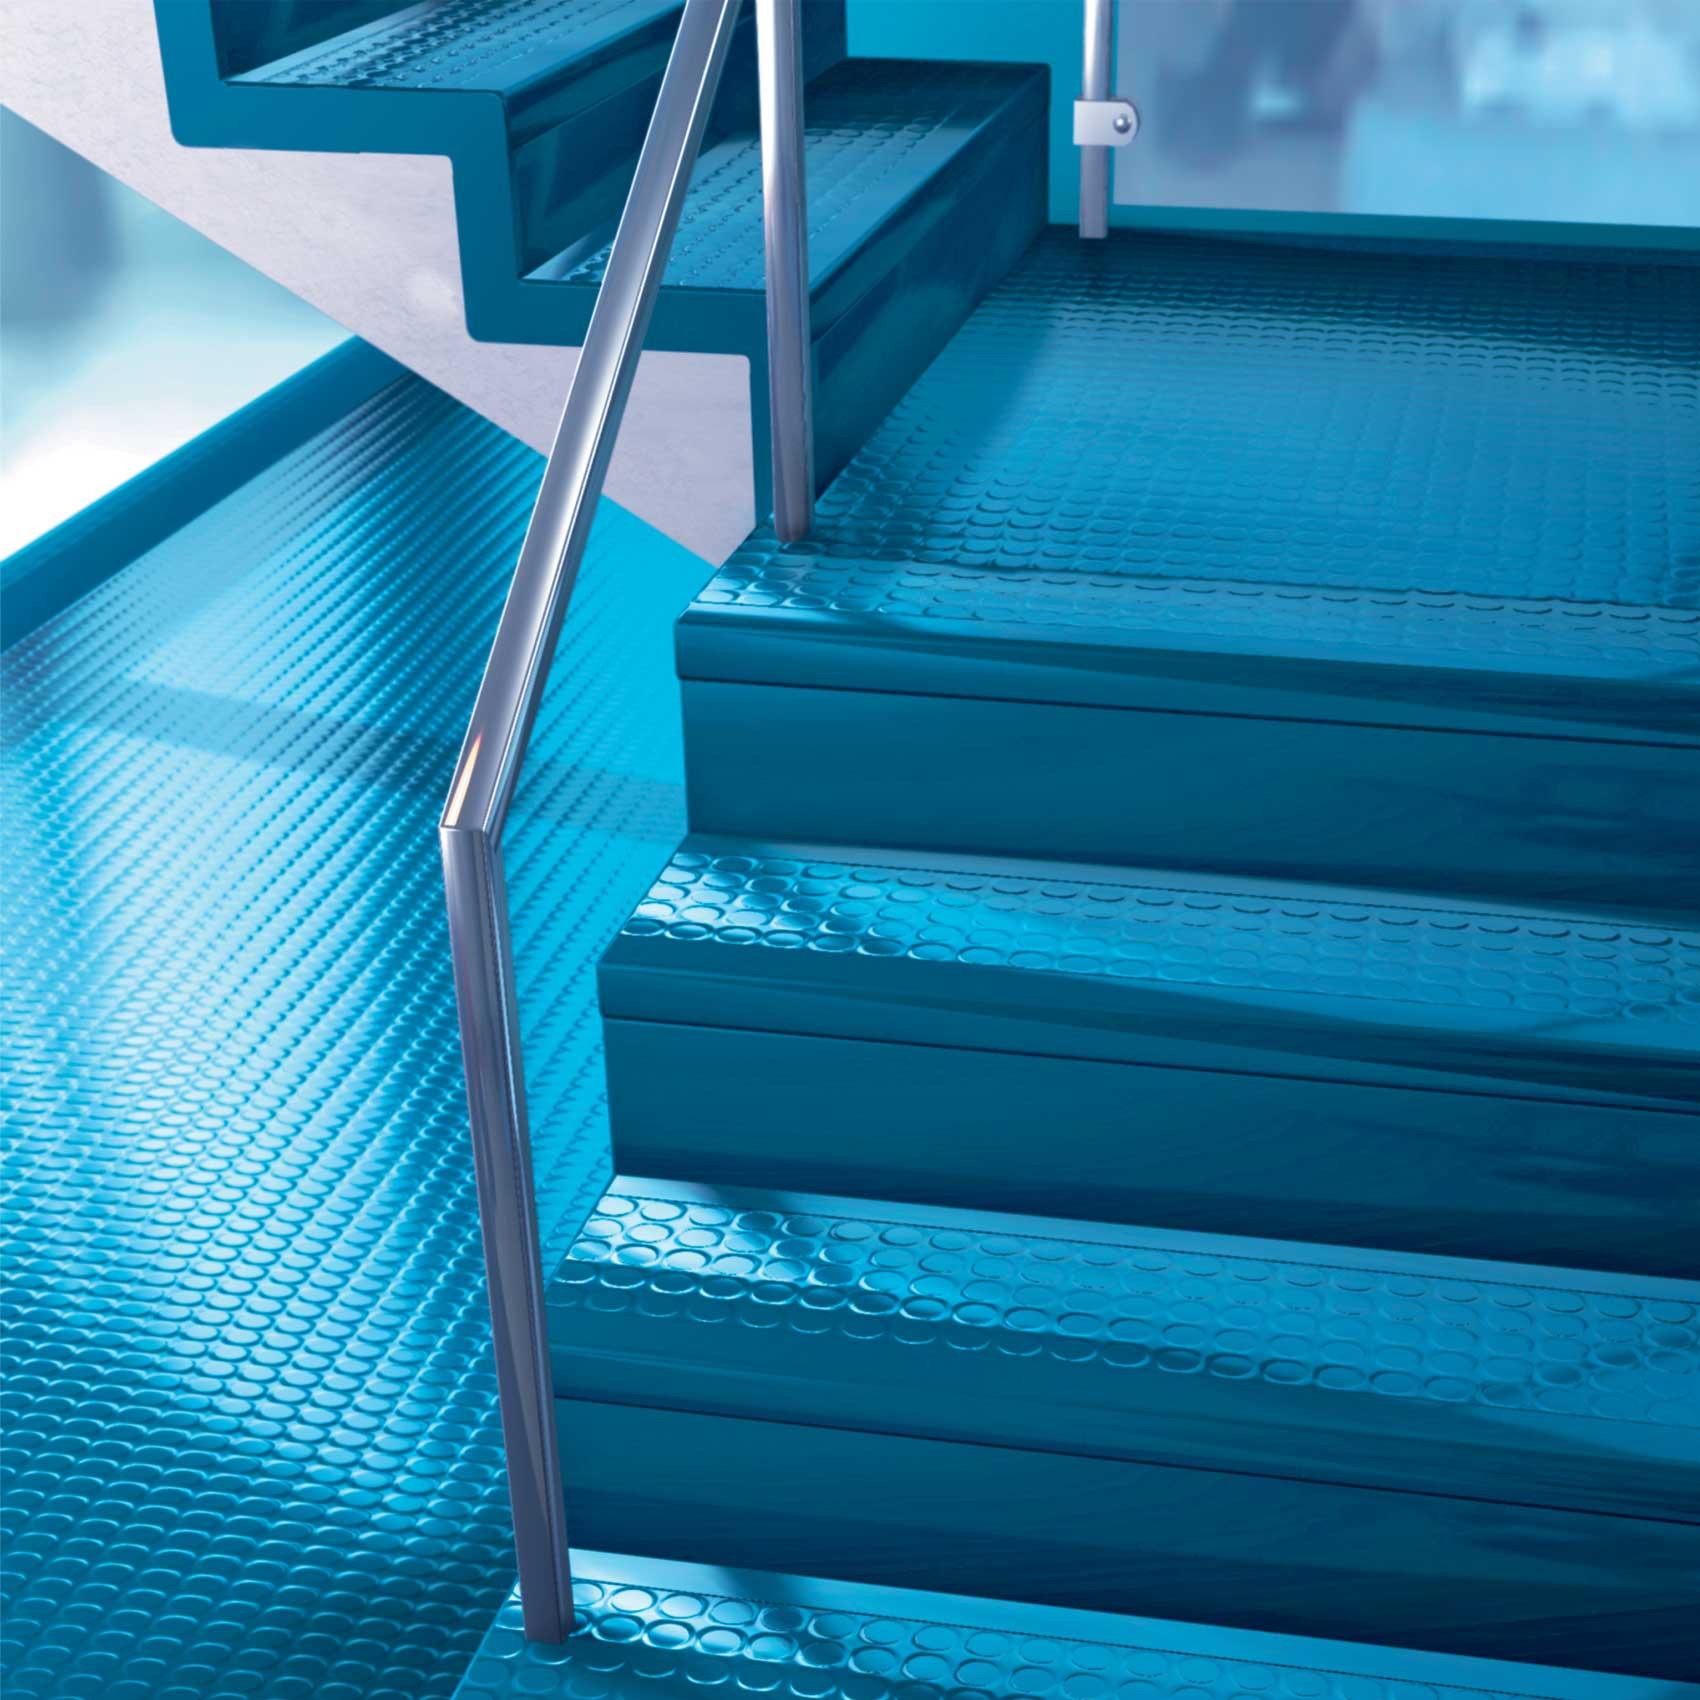 橡胶楼梯踏步|科亚特防滑耐磨整体橡胶楼梯踏步